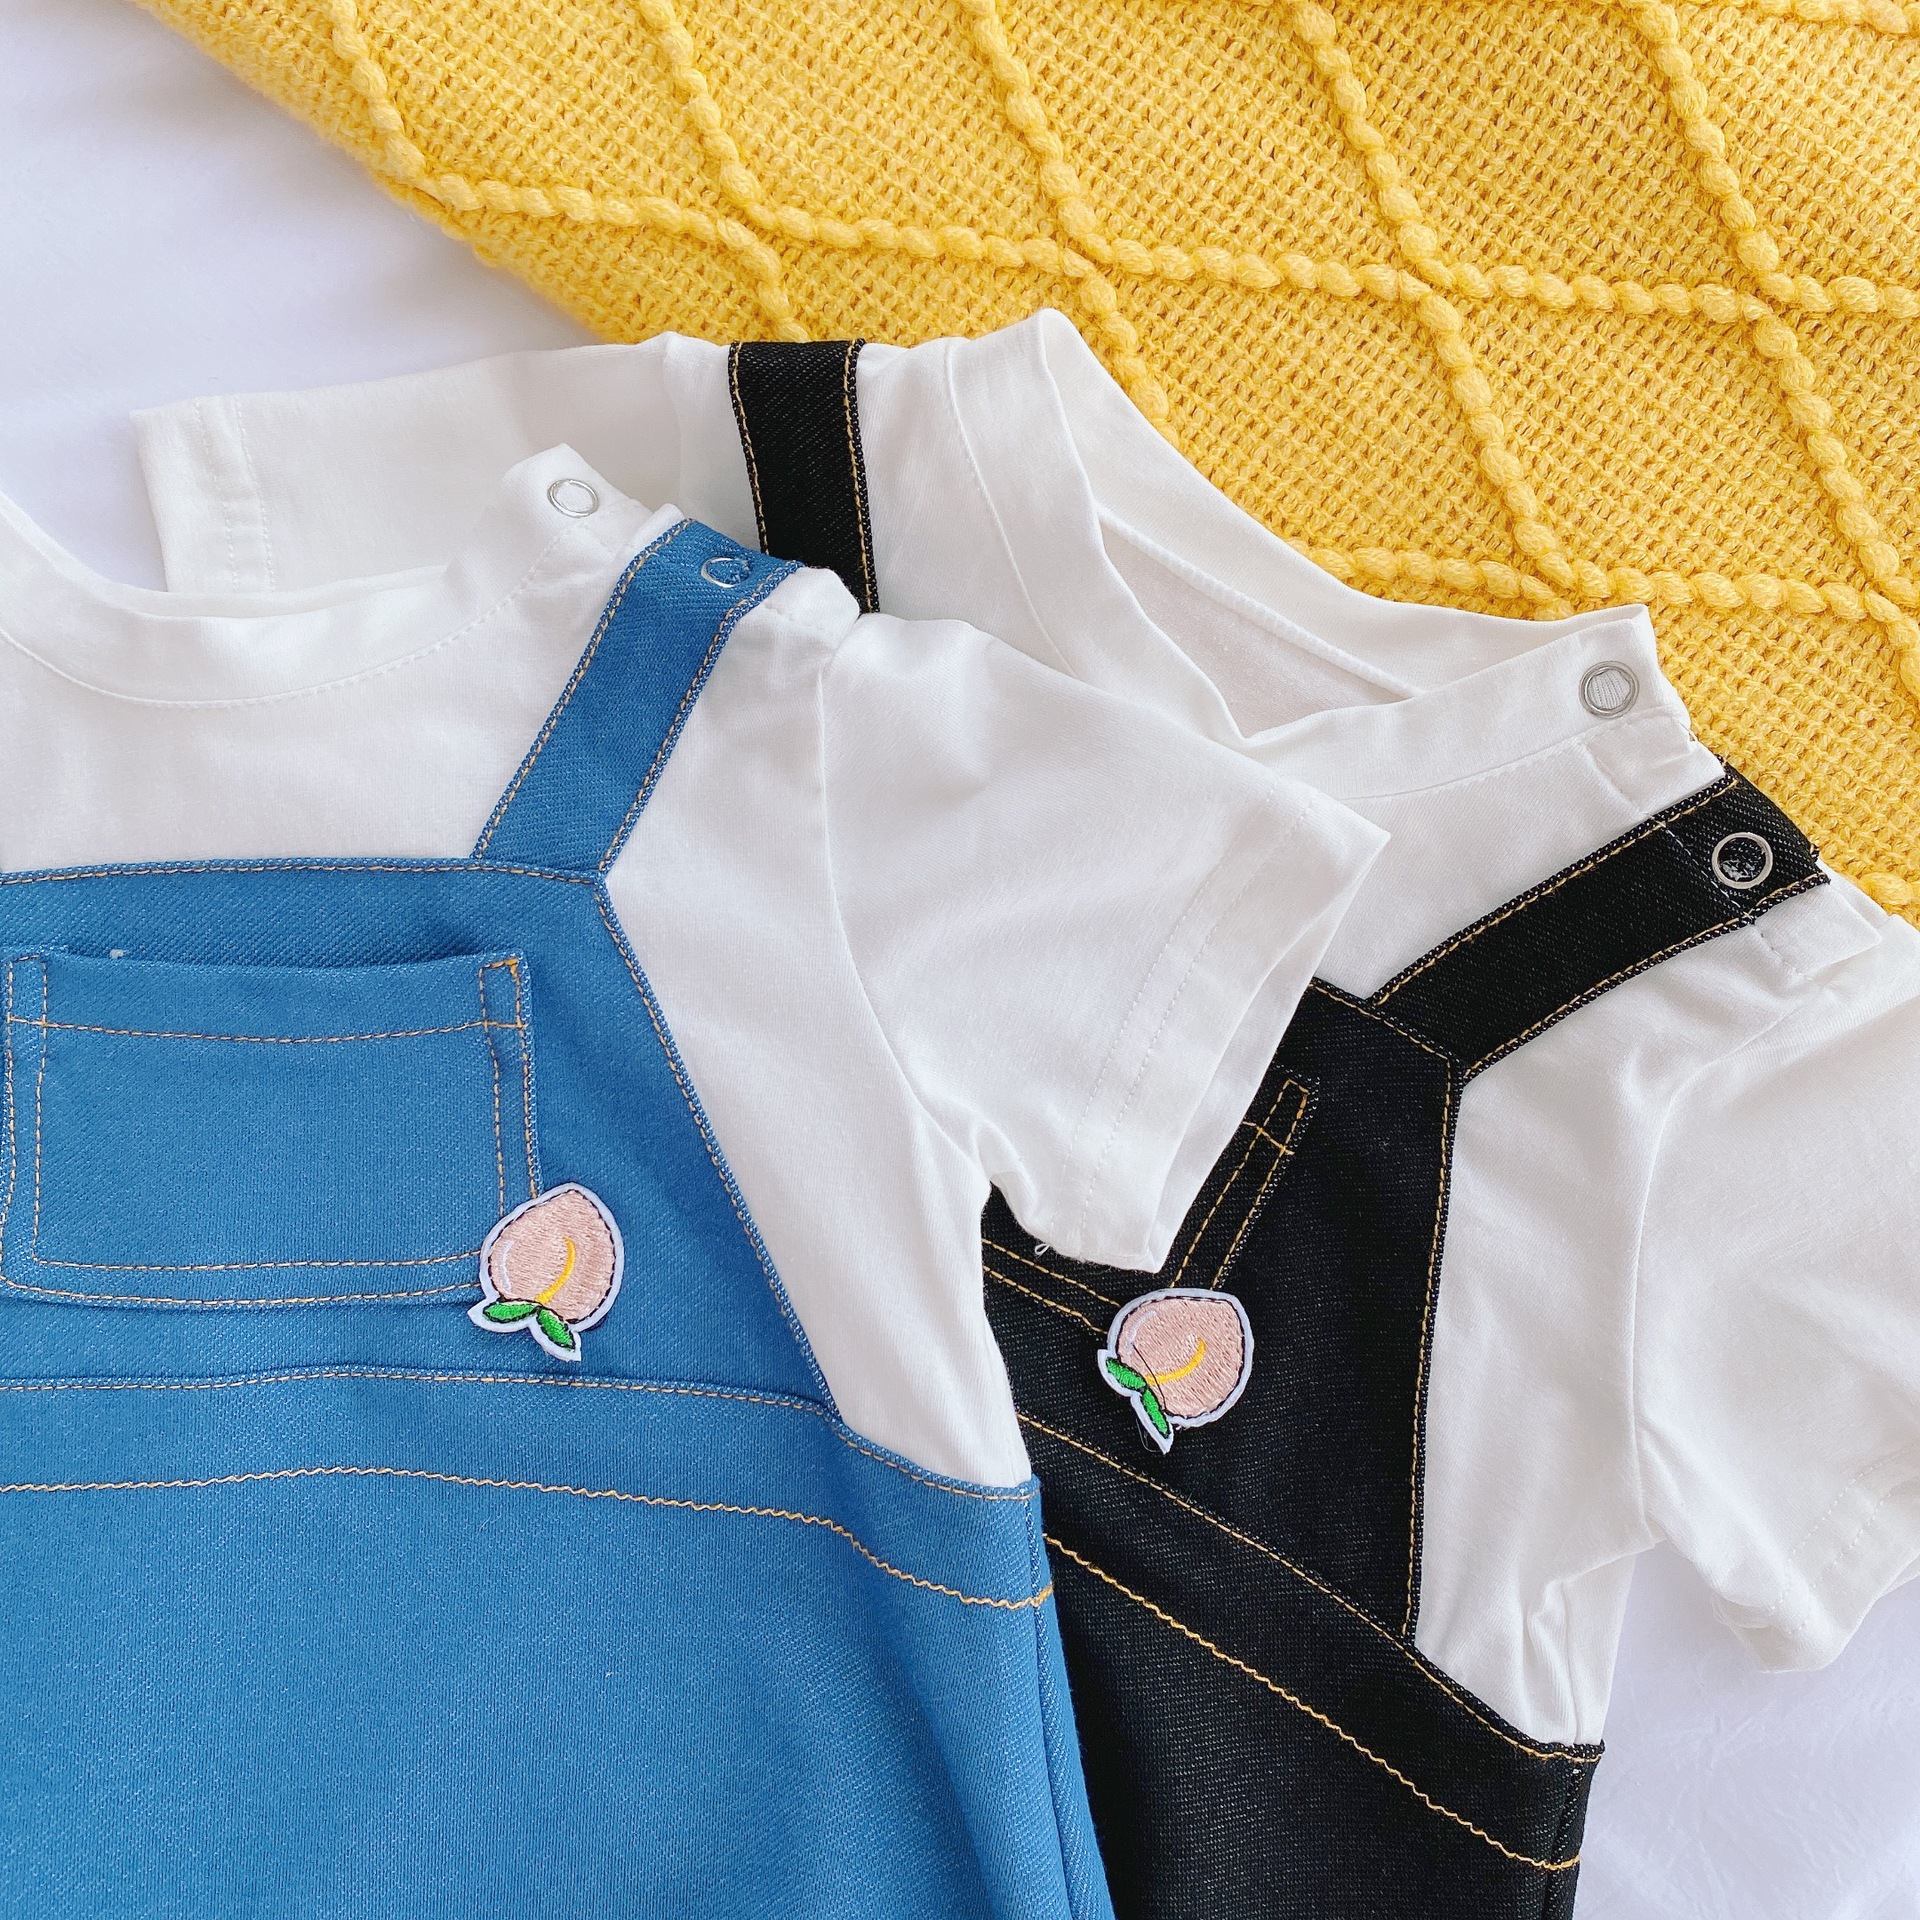 Áo liền quần phối vải denim thời trang mùa hè cho trẻ em từ 0-24 tháng tuổi